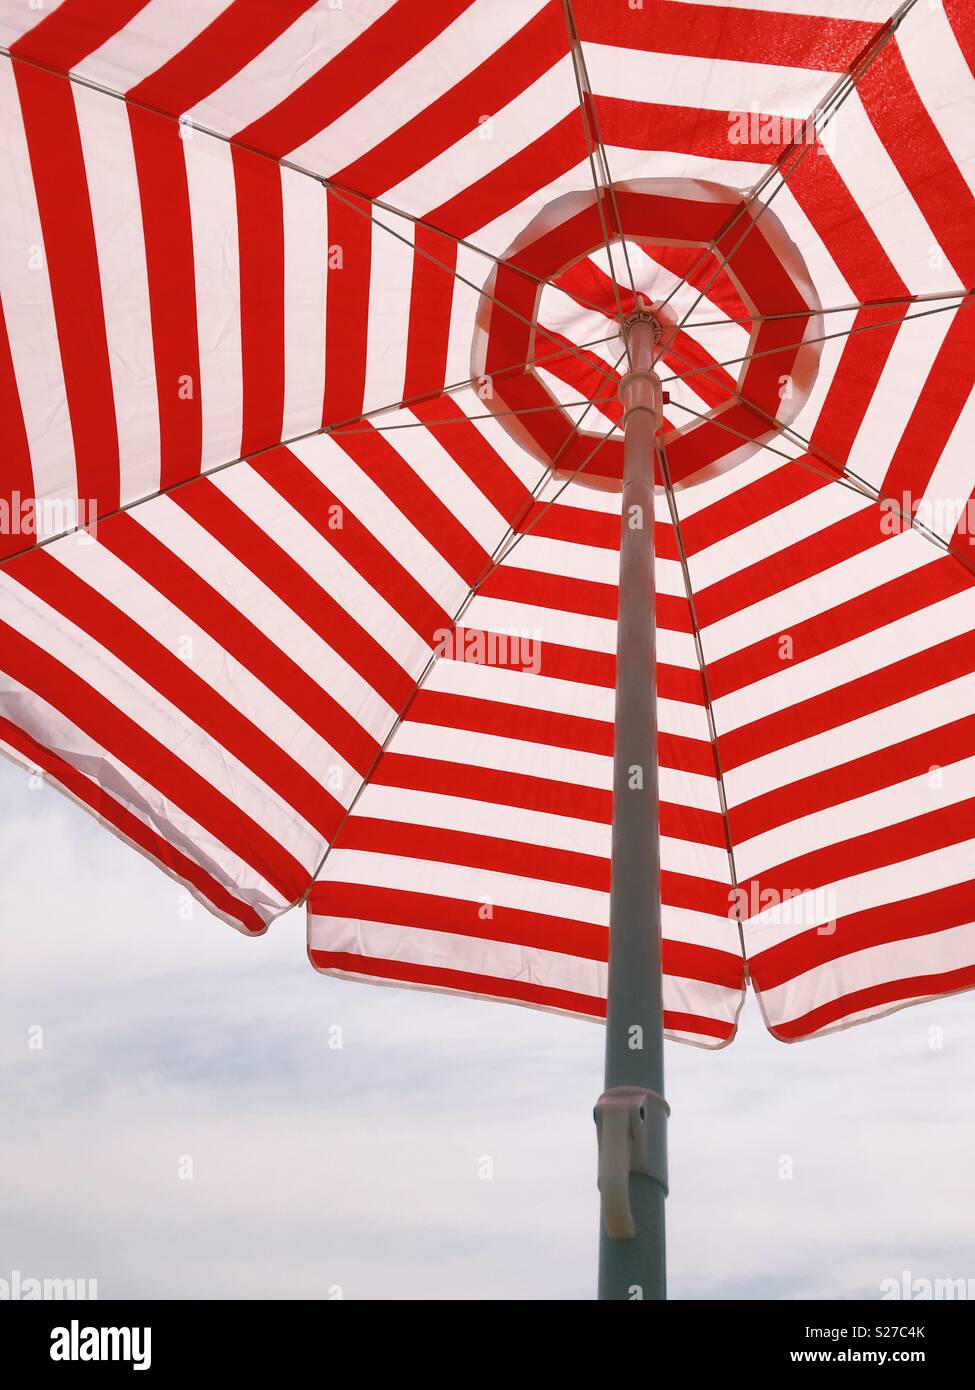 Mirando hacia arriba a rayas rojas y blancas de una sombrilla en la playa. Foto de stock